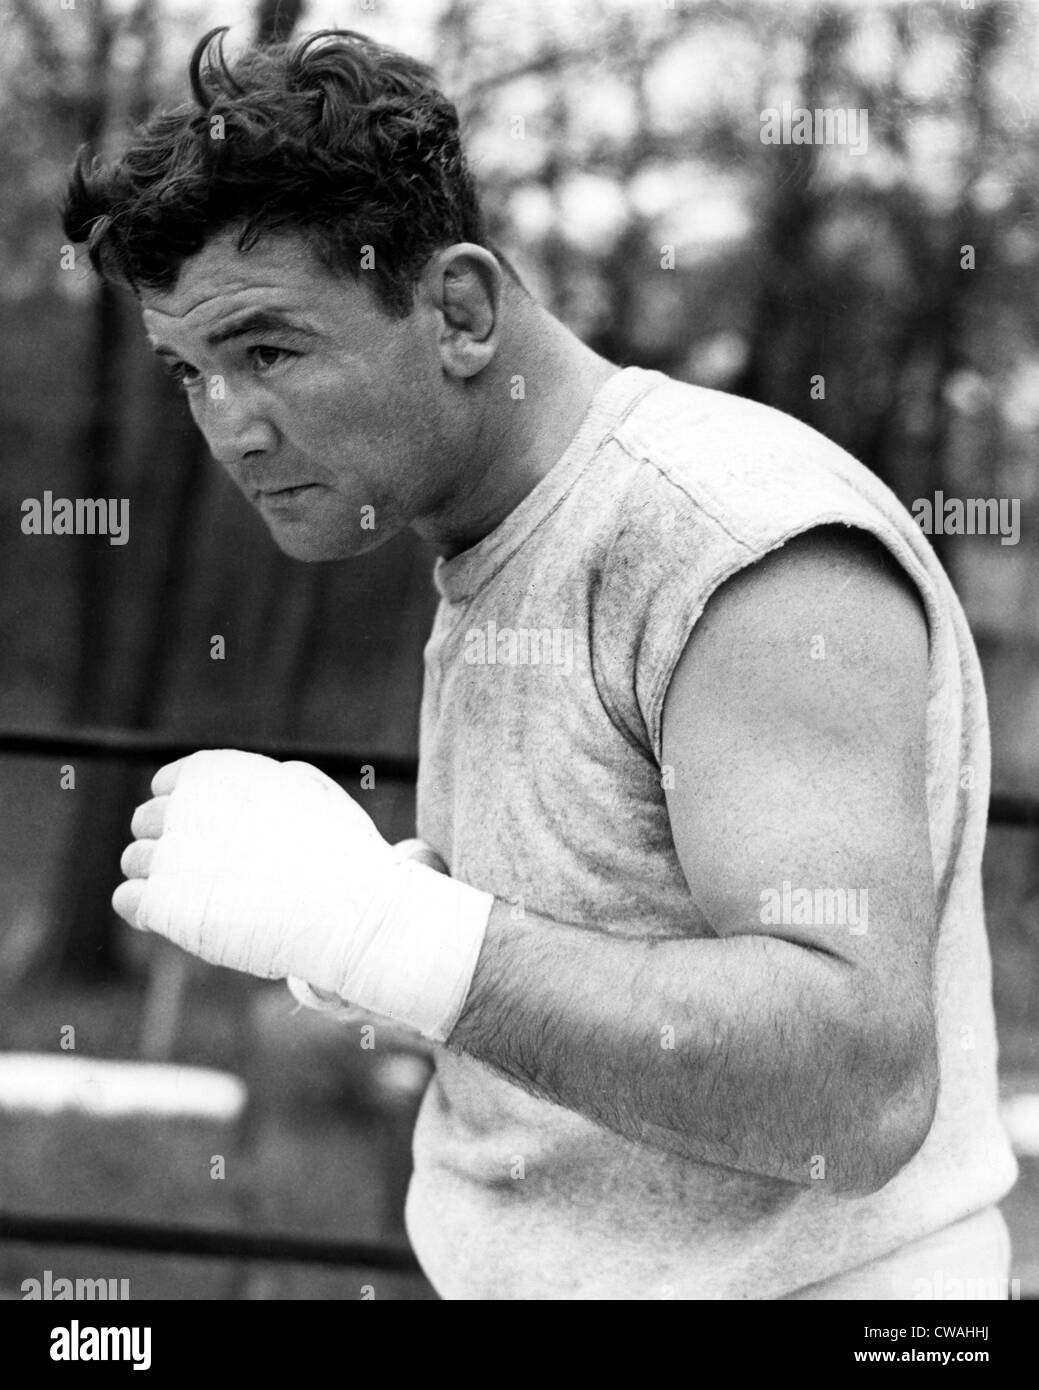 James Braddock in formazione per la prossima lotta contro Joe Louis, ( Braddock vs. Louis), Chicago, 1937.. La cortesia: CSU Foto stock - Alamy